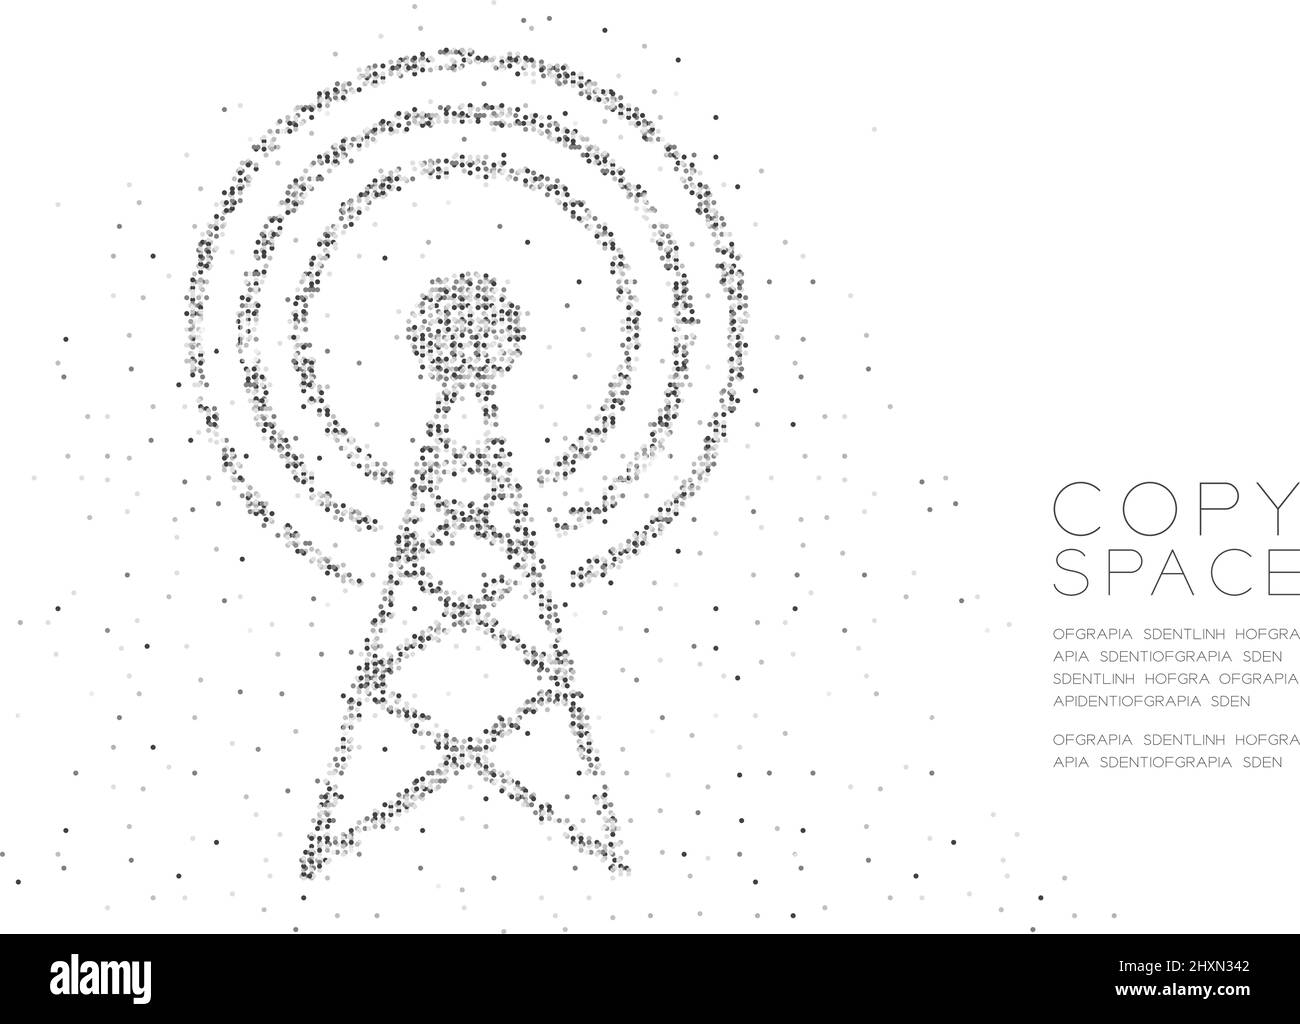 Abstrakt Geometrischer Kreis Punkt Molekül Partikel Antenne Tower Form, VR-Technologie drahtlose Netzwerk Kommunikation Design schwarz Farbe Illustration isol Stock Vektor